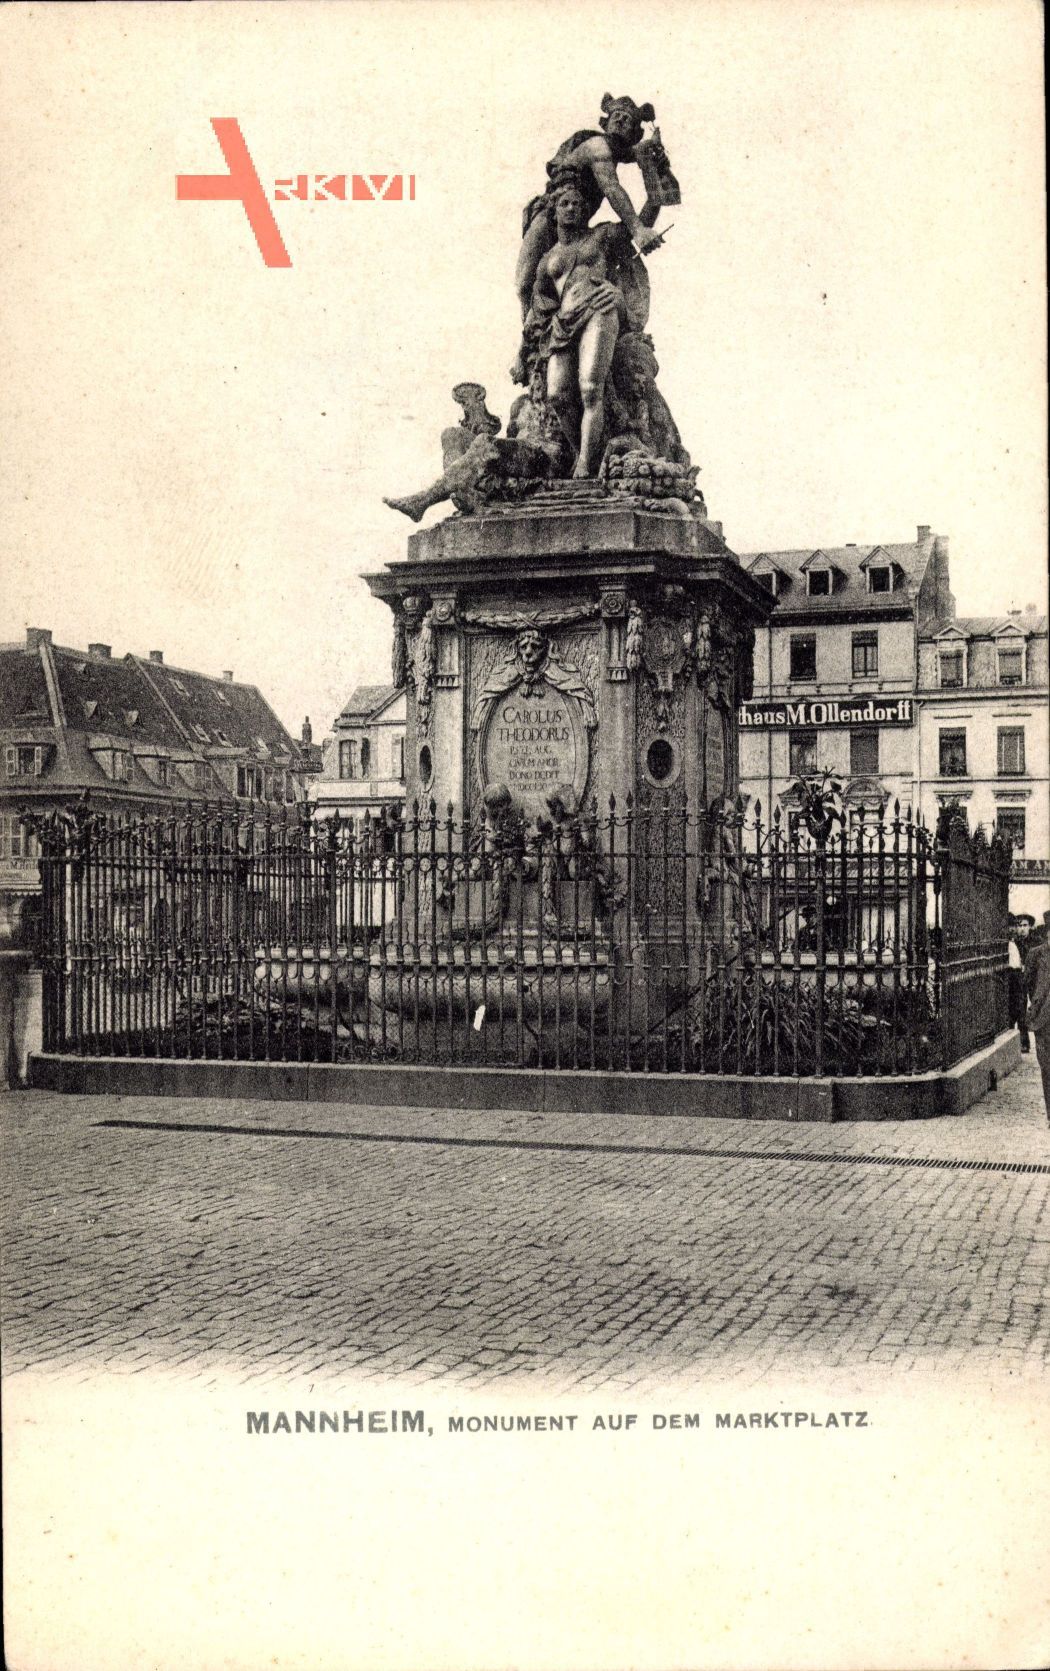 Mannheim in Baden Württemberg, Monument auf dem Marktplatz